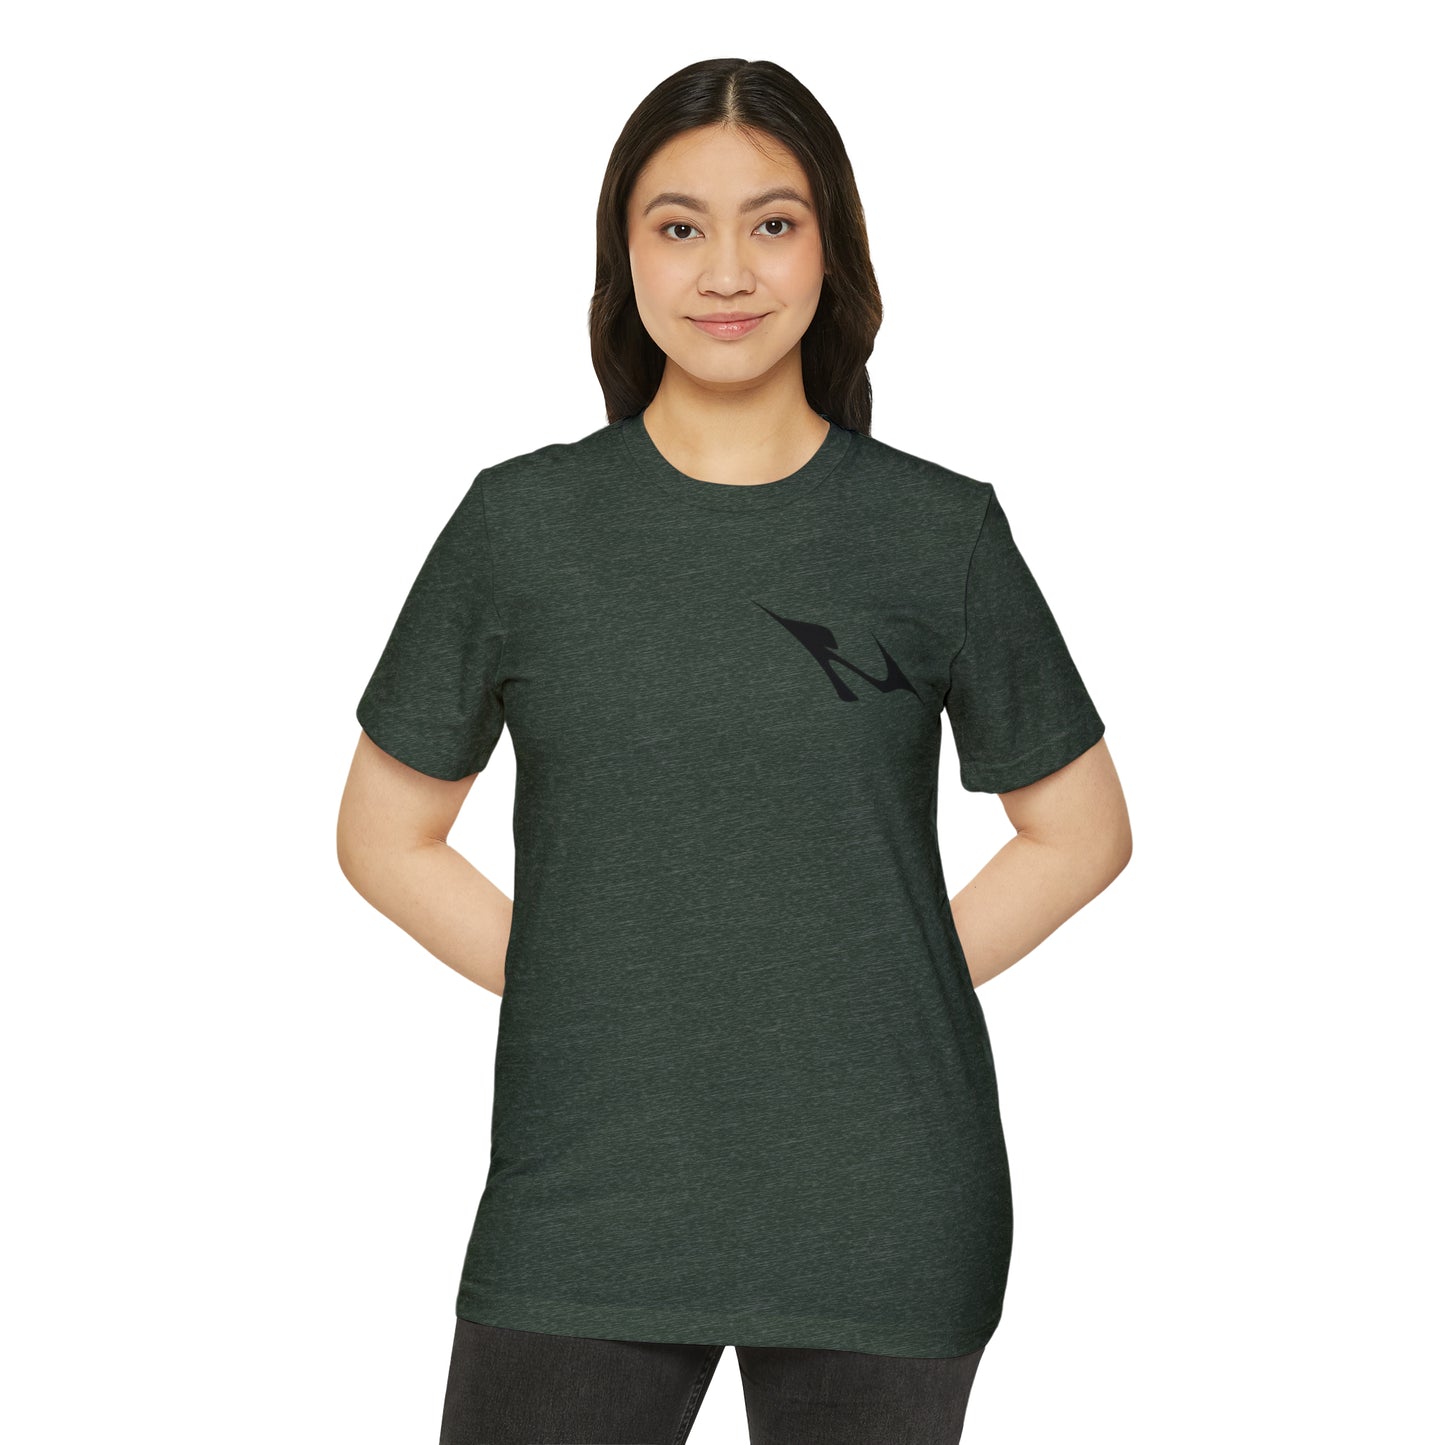 MINIMAL SHAPE 103 - Unisex Recycled Organic T-Shirt